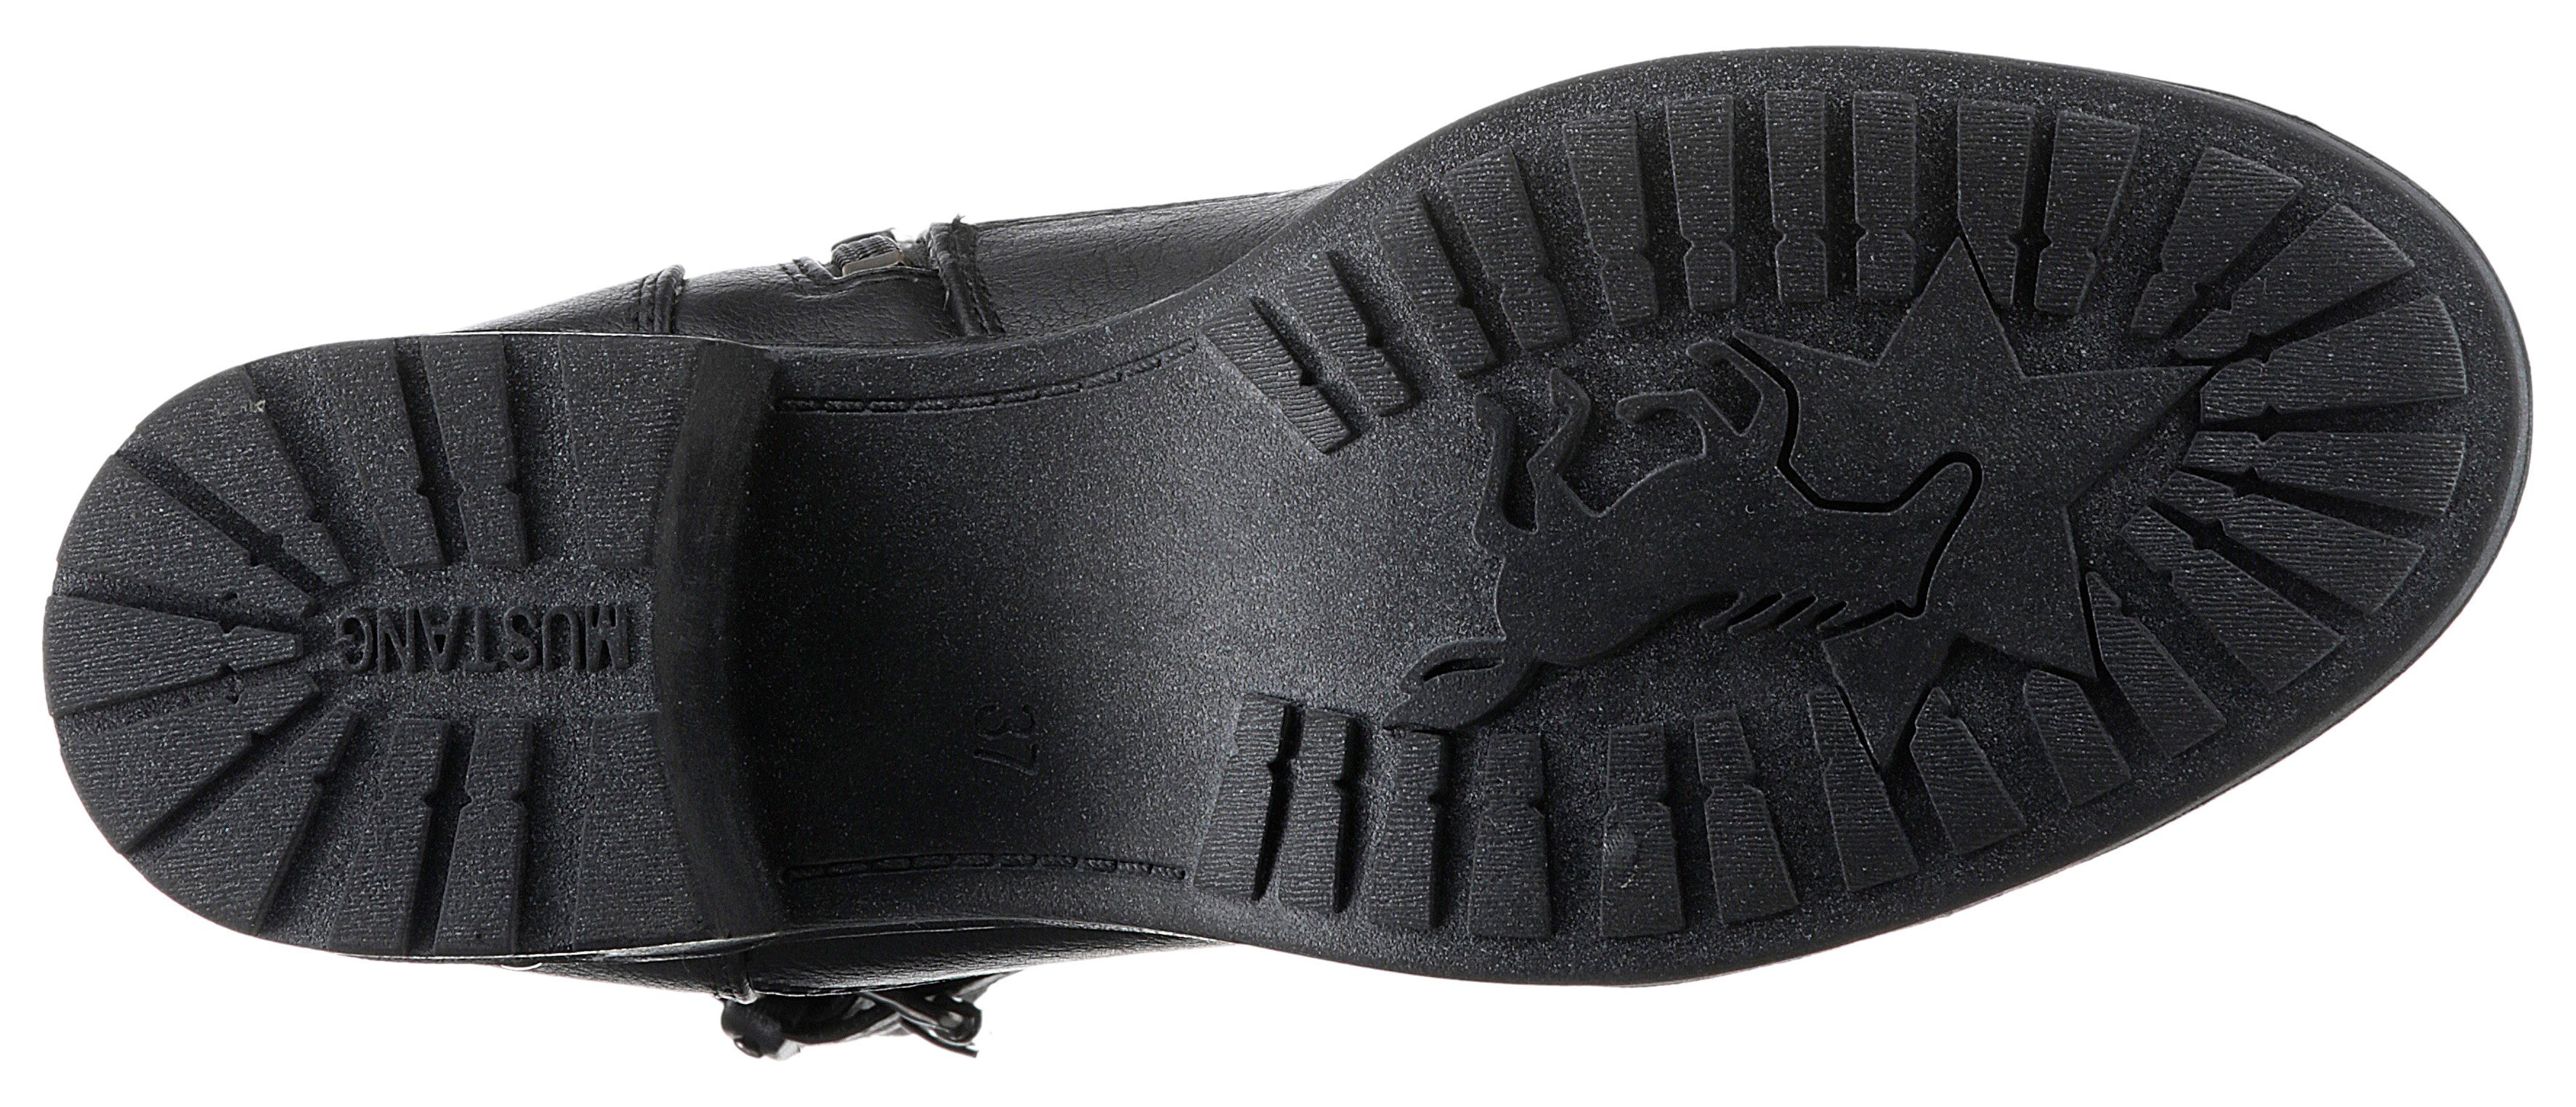 Schnürstiefelette schwarz Shoes Mustang Innen-Reißverschluss mit